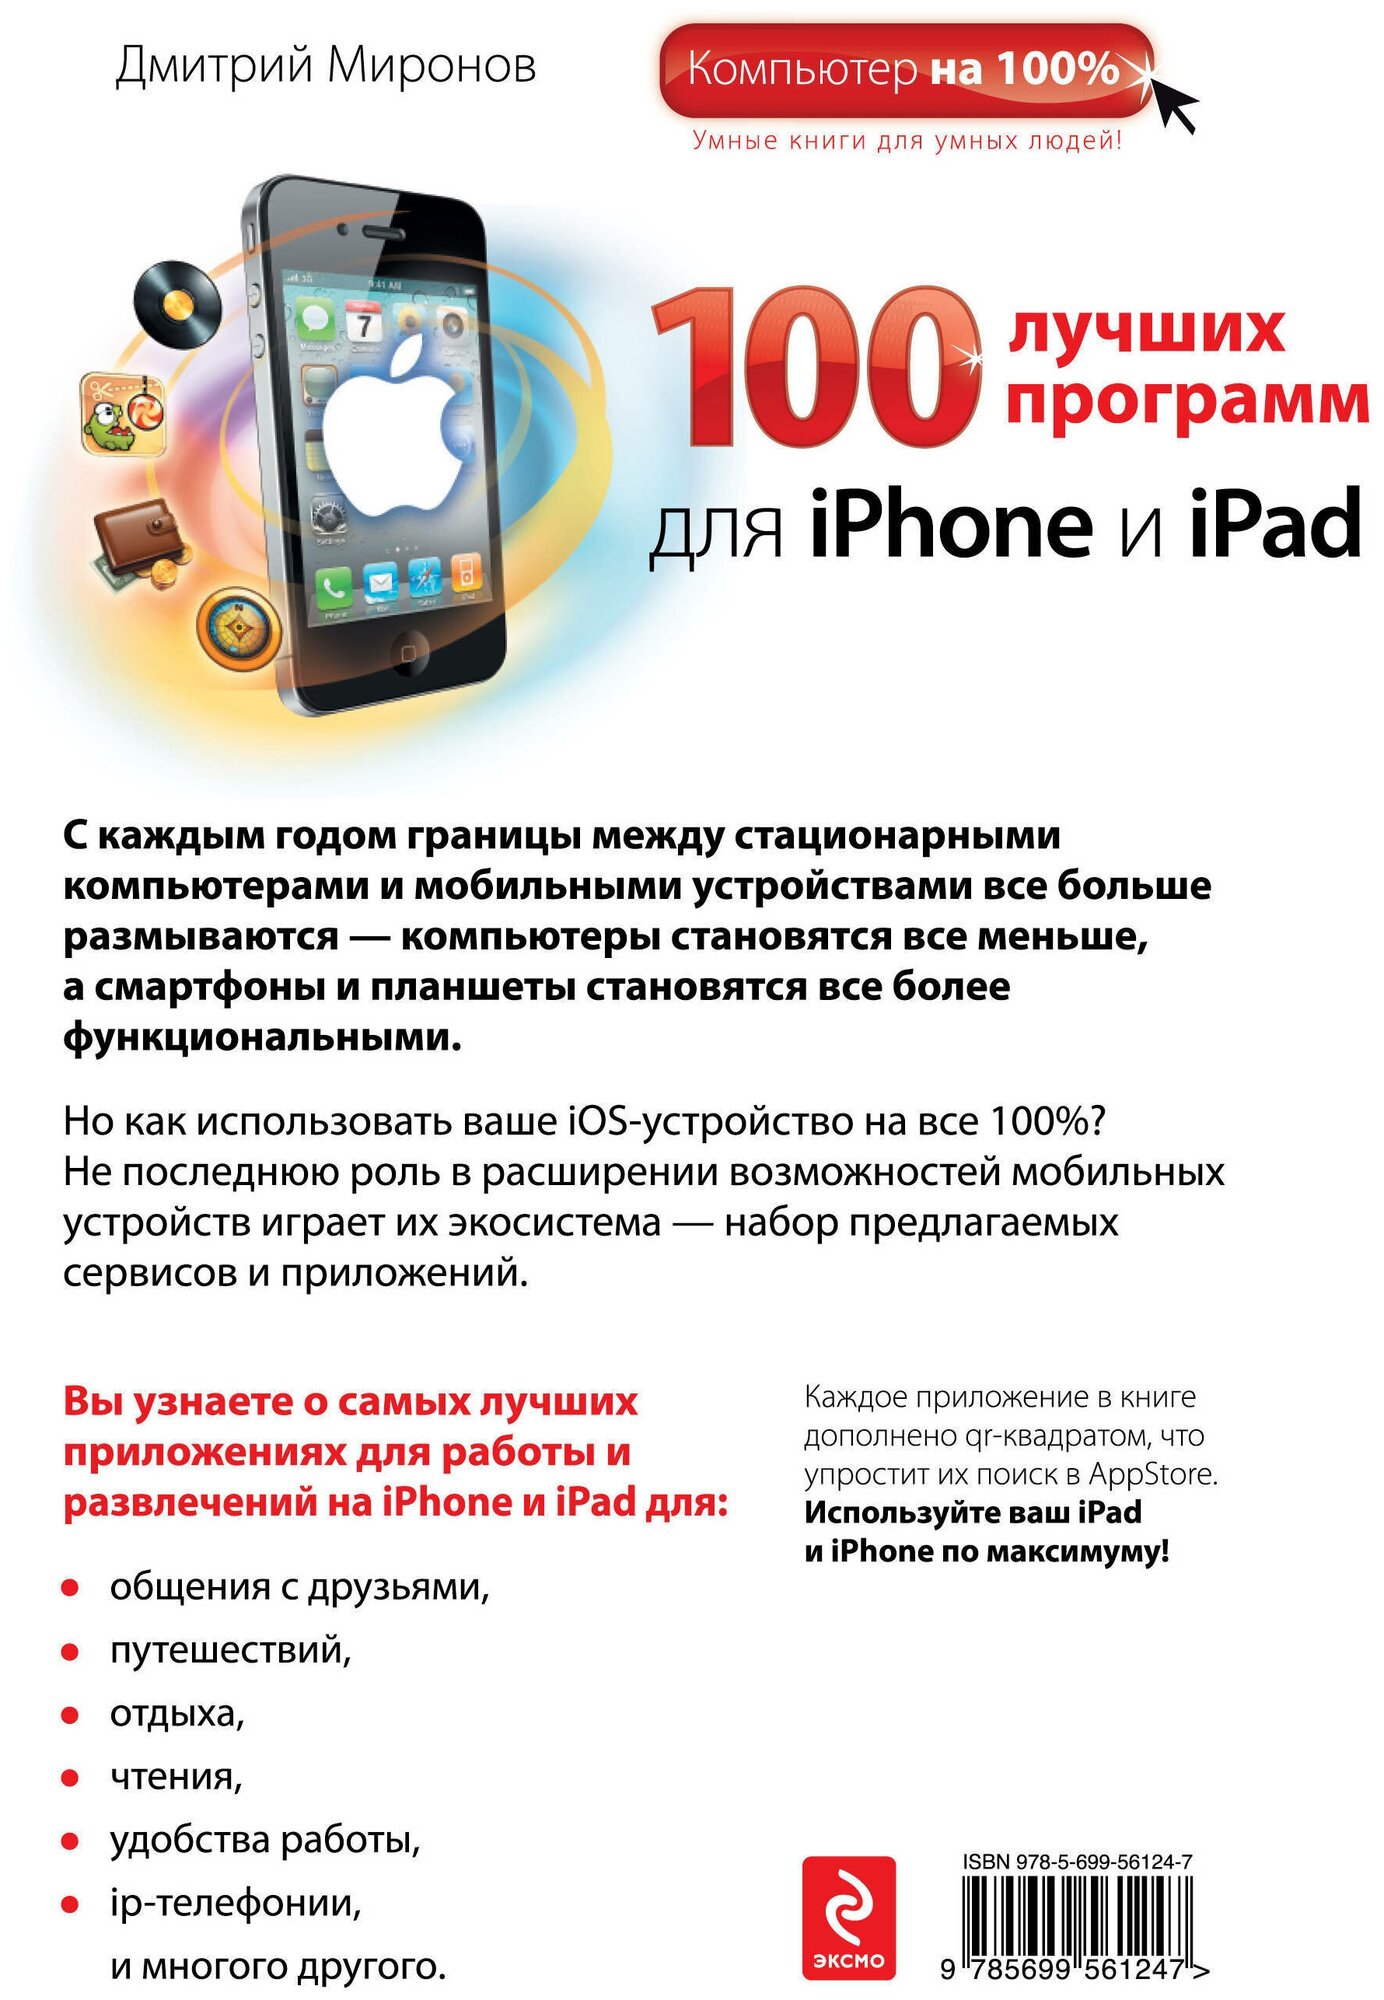 100 лучших программ для iPhone и iPad - фото №2